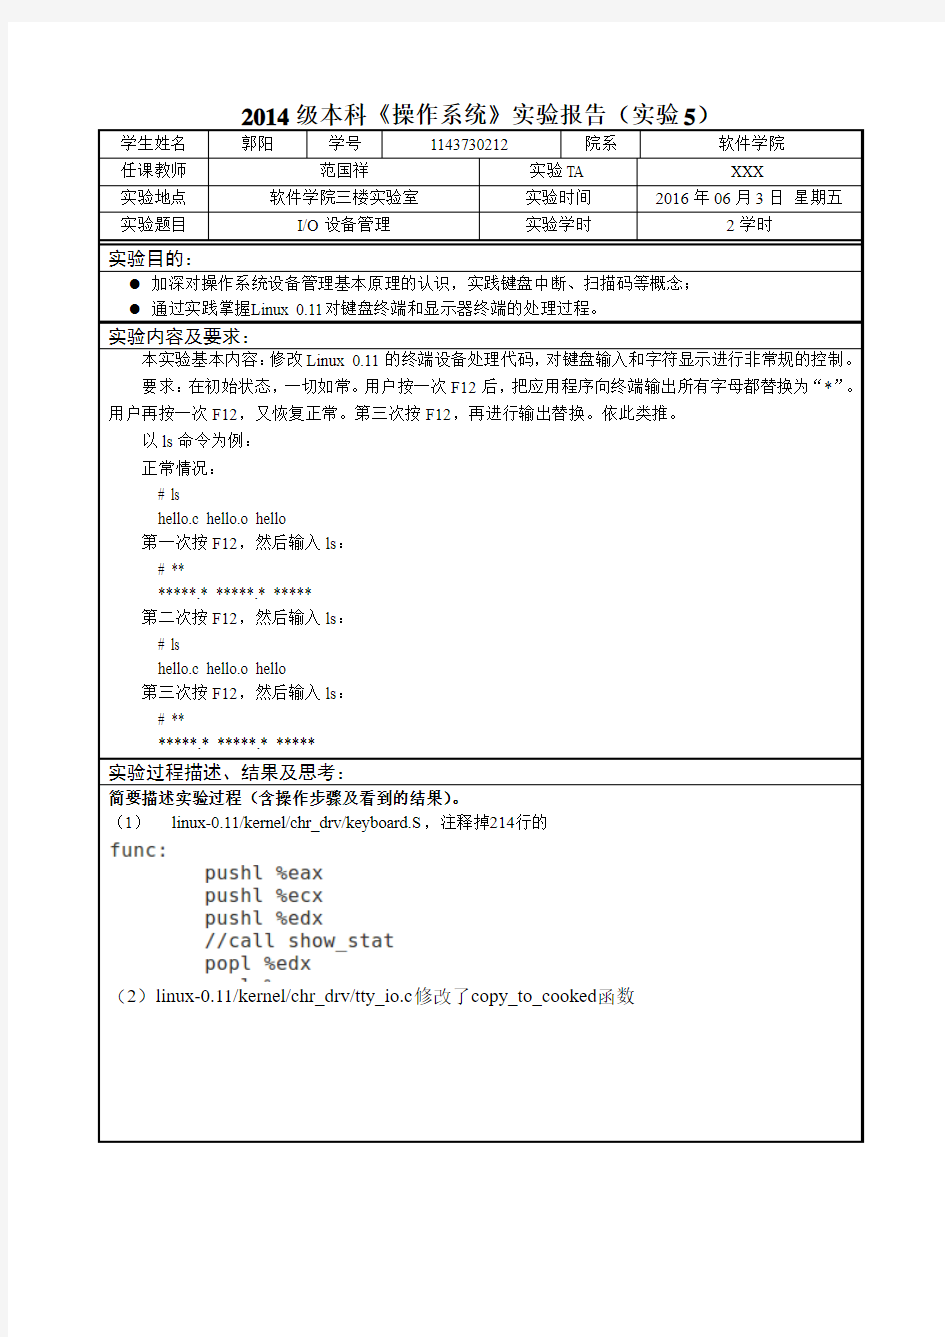 2014级本科《操作系统》实验5报告-1143730212+郭阳